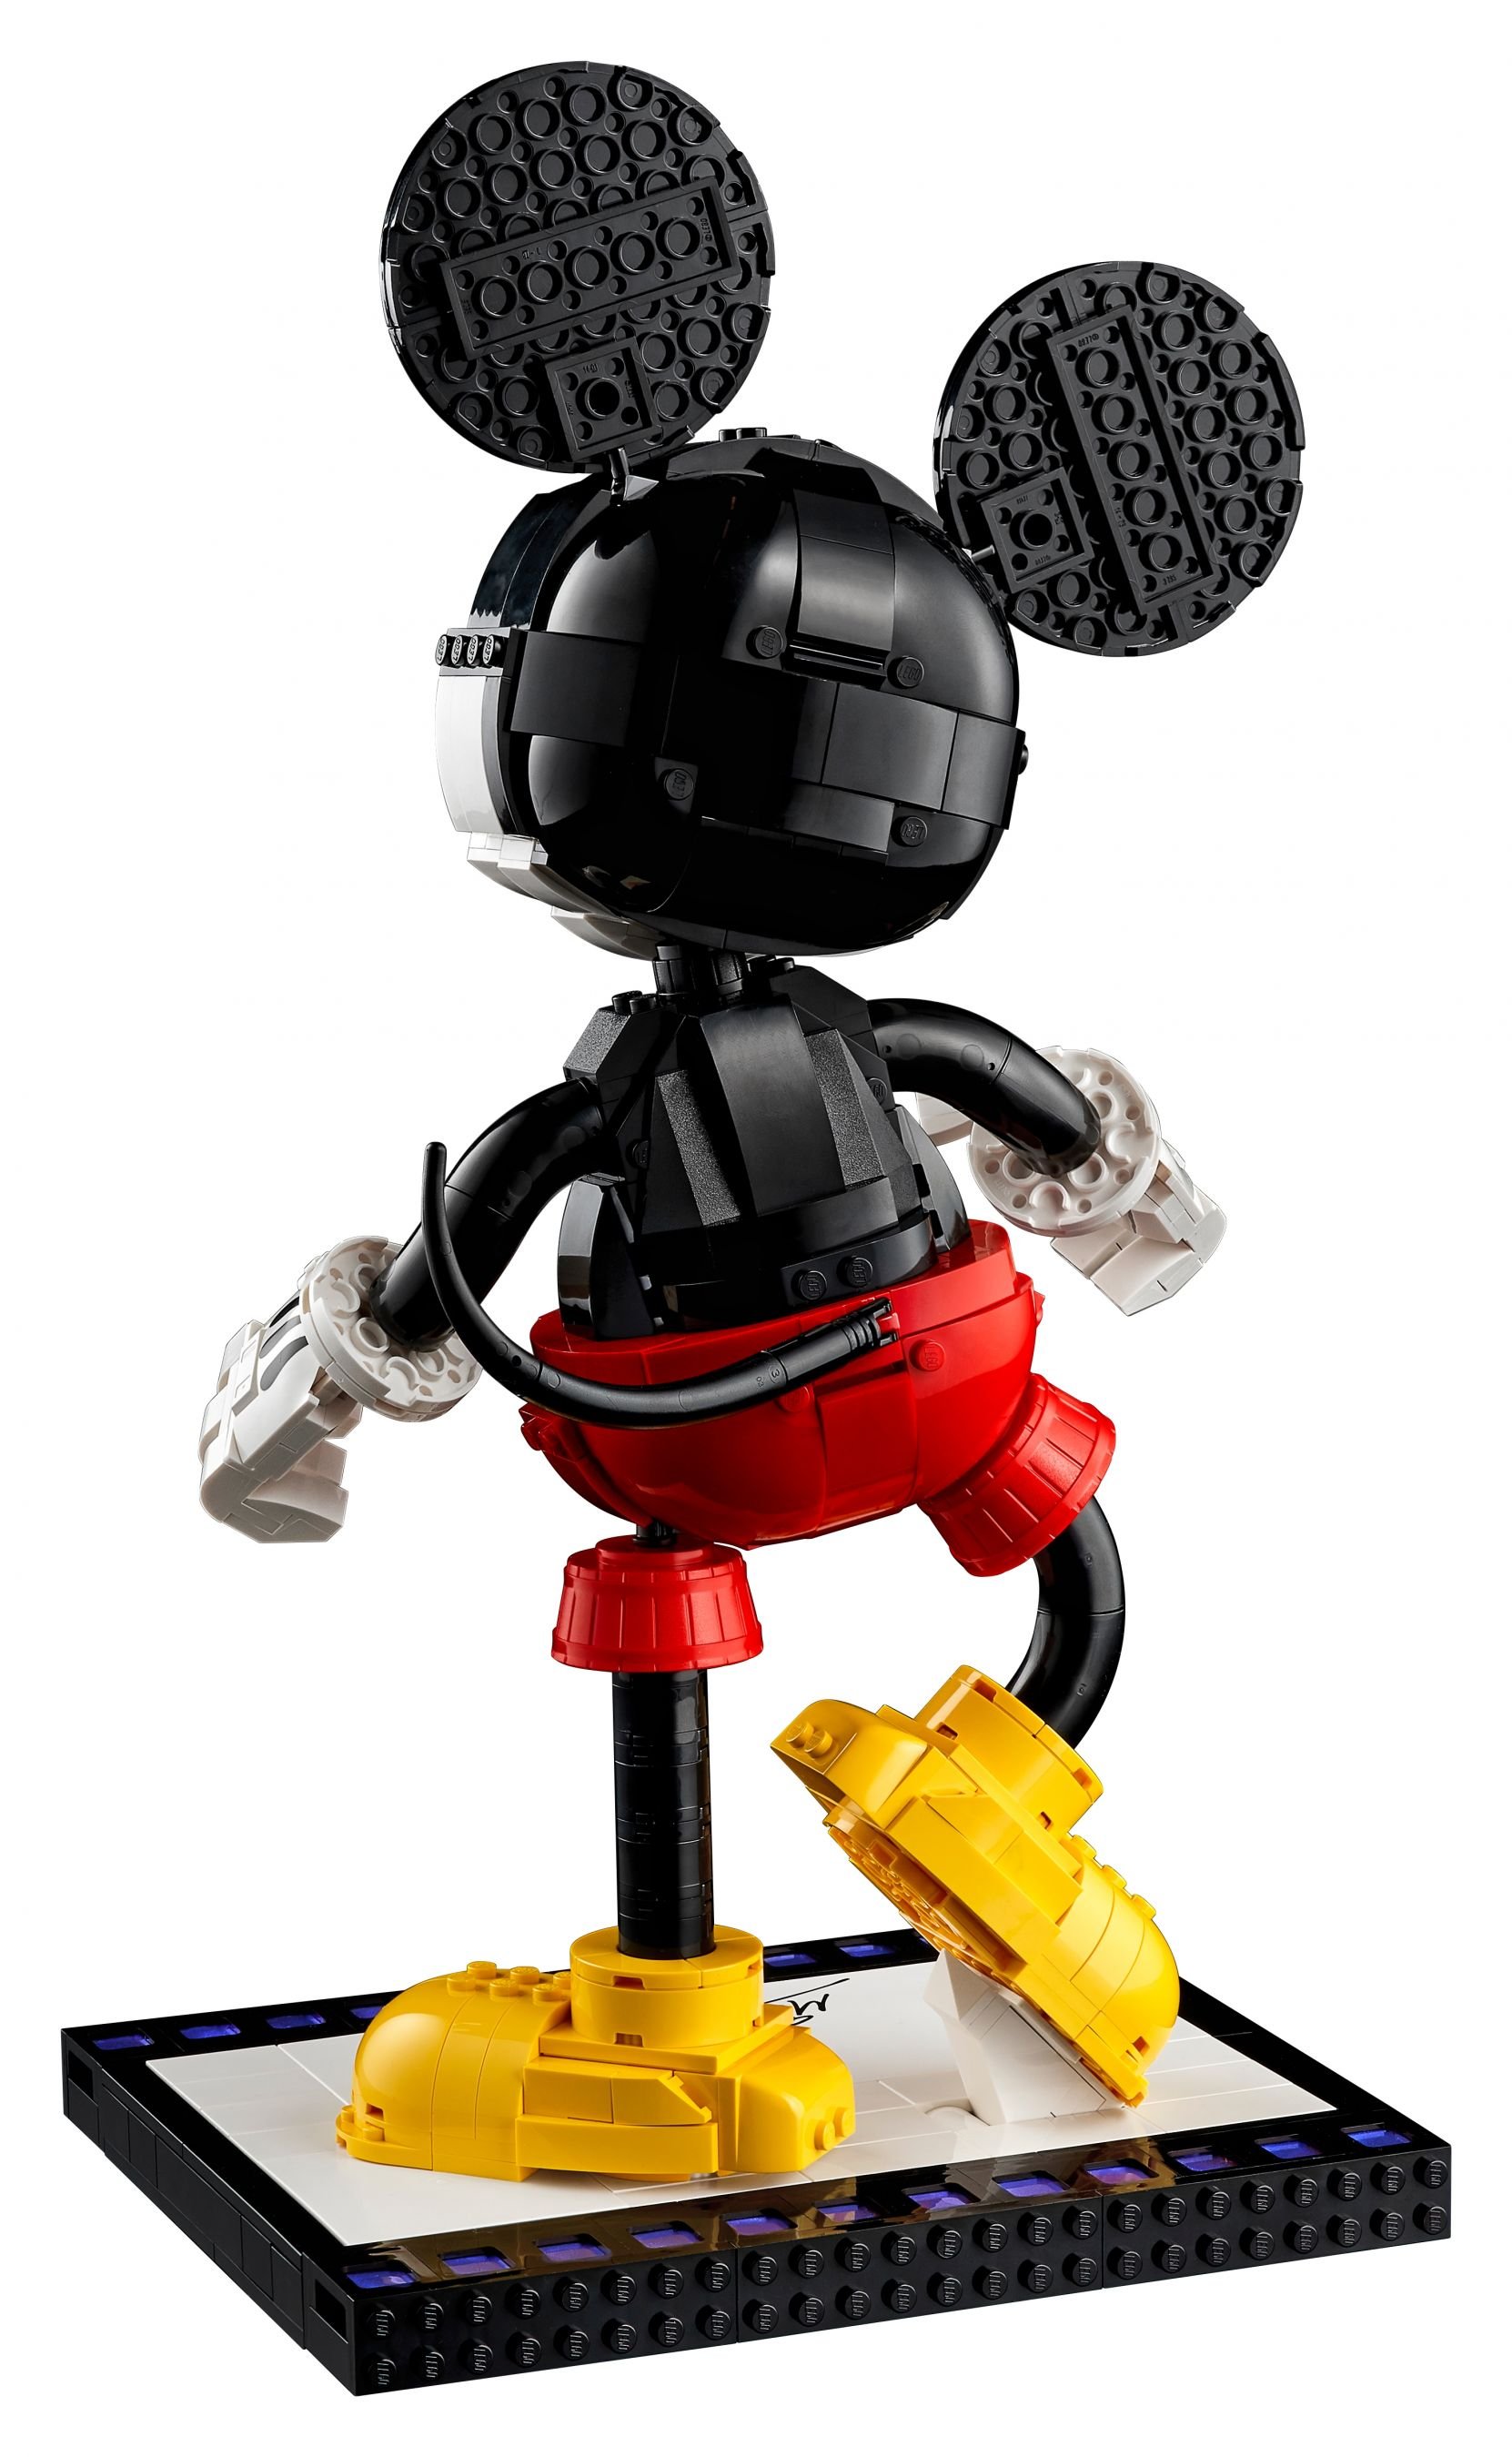 LEGO Disney 43179 Micky Maus und Minnie Maus LEGO_43179_alt7.jpg